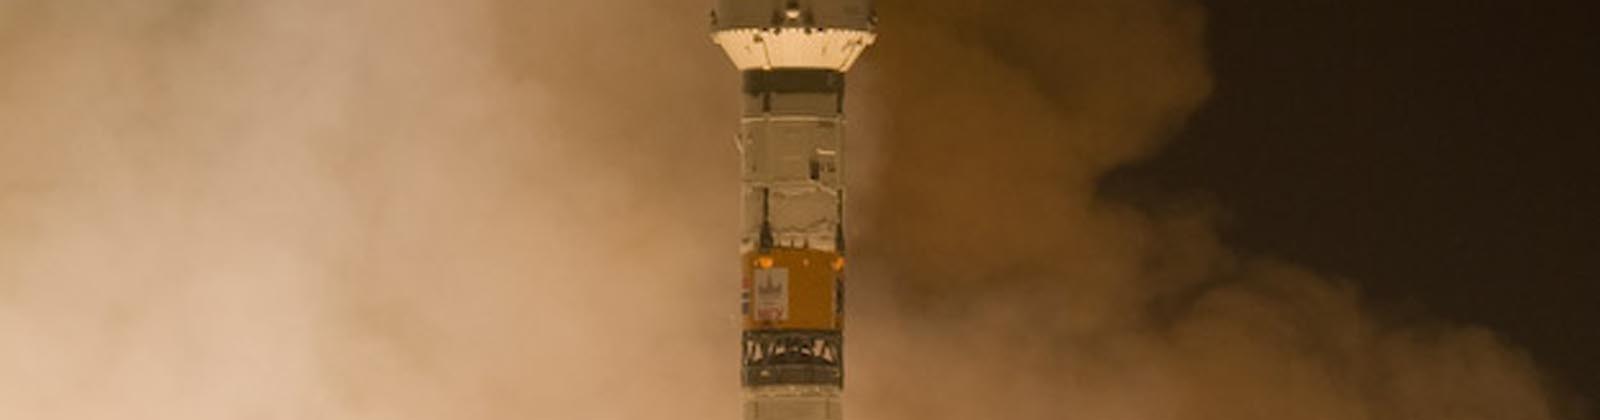 Lancement de la fusée Soyuz